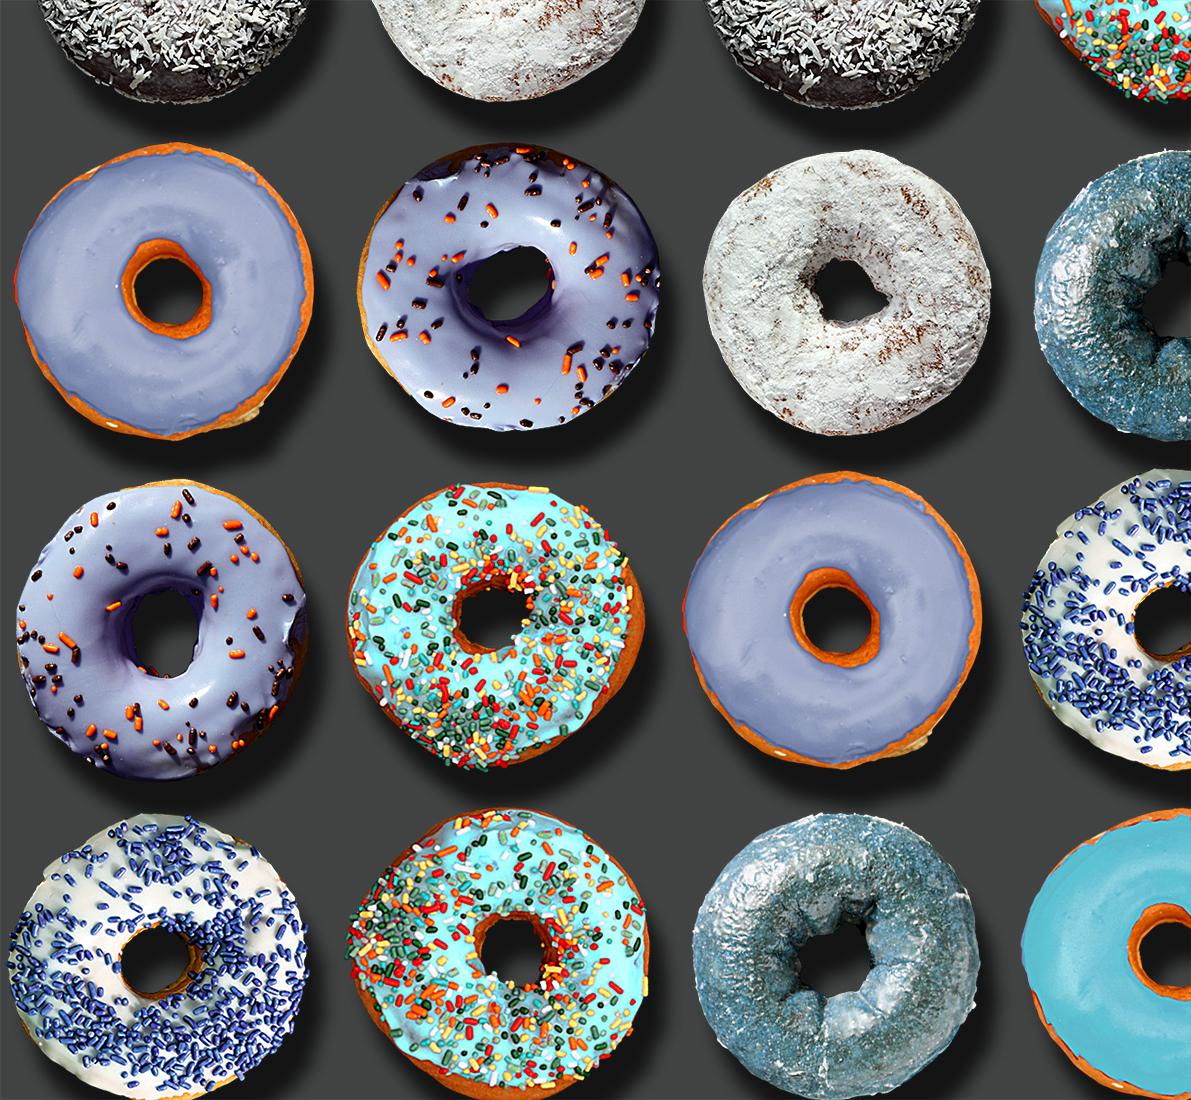 Sie haben in den sozialen Medien weltweit von den außergewöhnlichen Donut-Porträts von Candice CMC gelesen, und wir sind begeistert und stolz, ihre Arbeit zu vertreten.

Dieses einmalige Fotoarrangement auf 100% Büttenpapier von Candice CMC misst